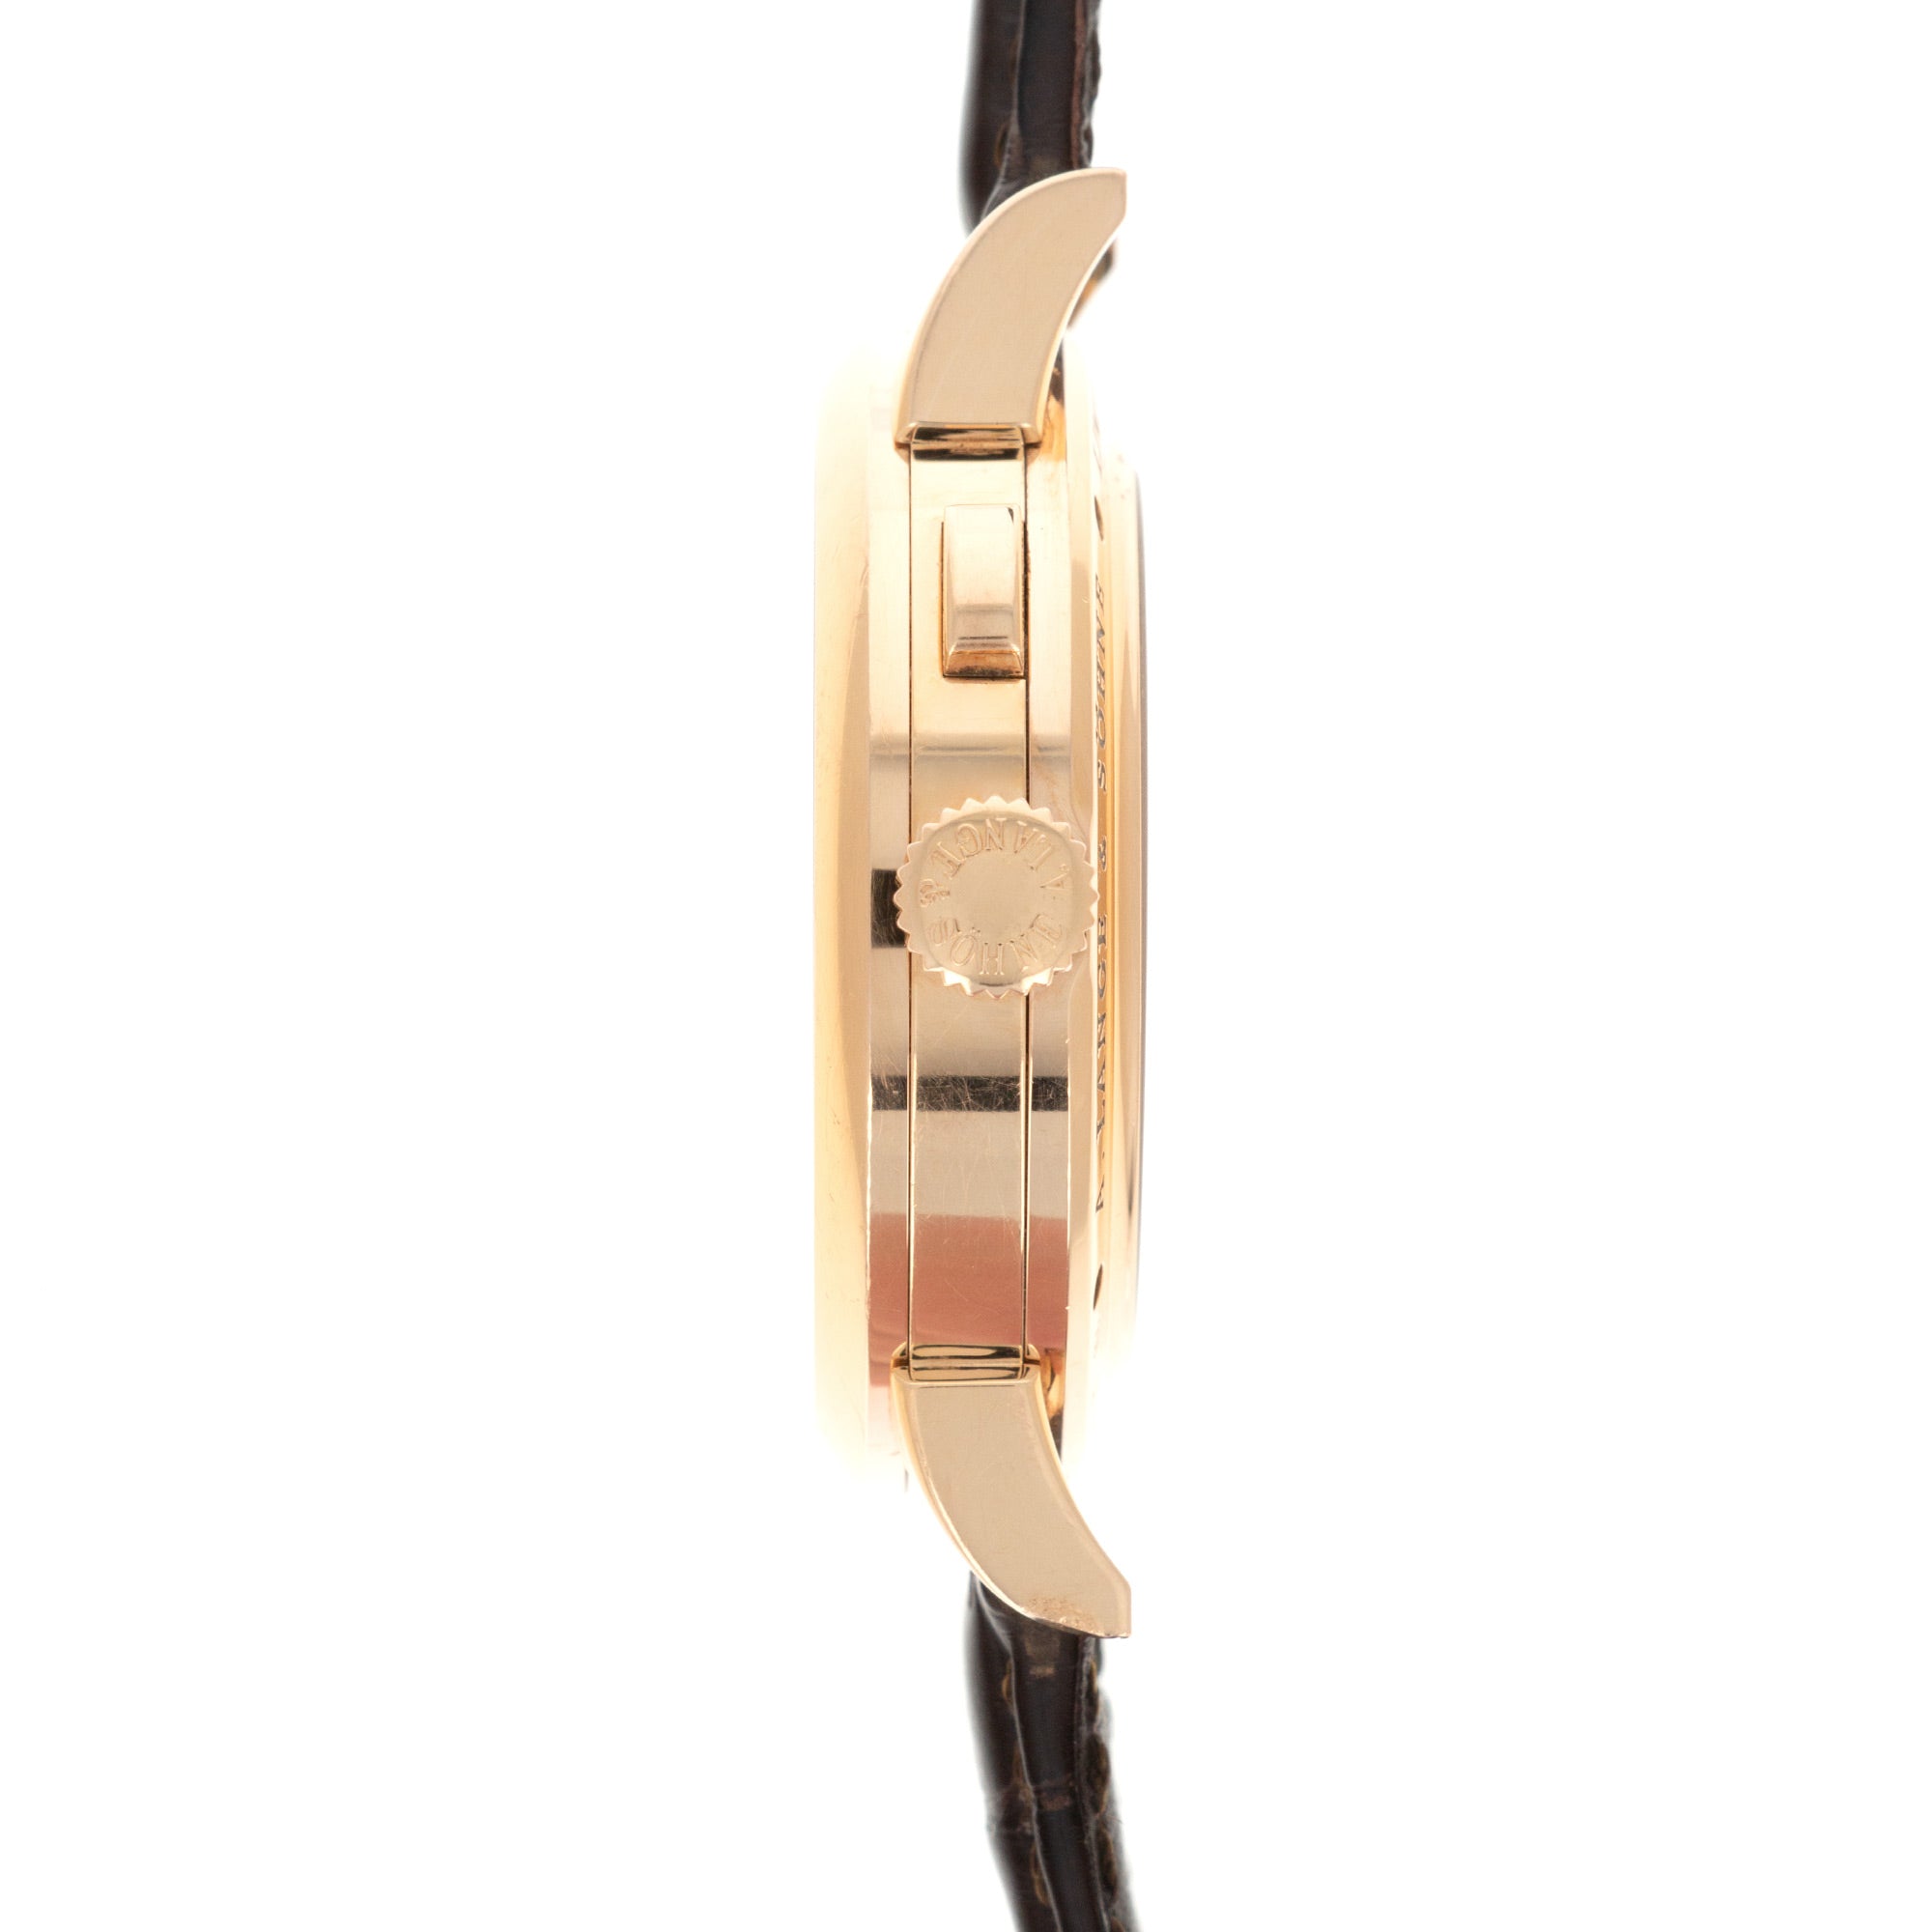 A. Lange & Sohne - A Lange & Sohne Rose Gold Richard Lange Referenzuhr Ref. 250.032 - The Keystone Watches